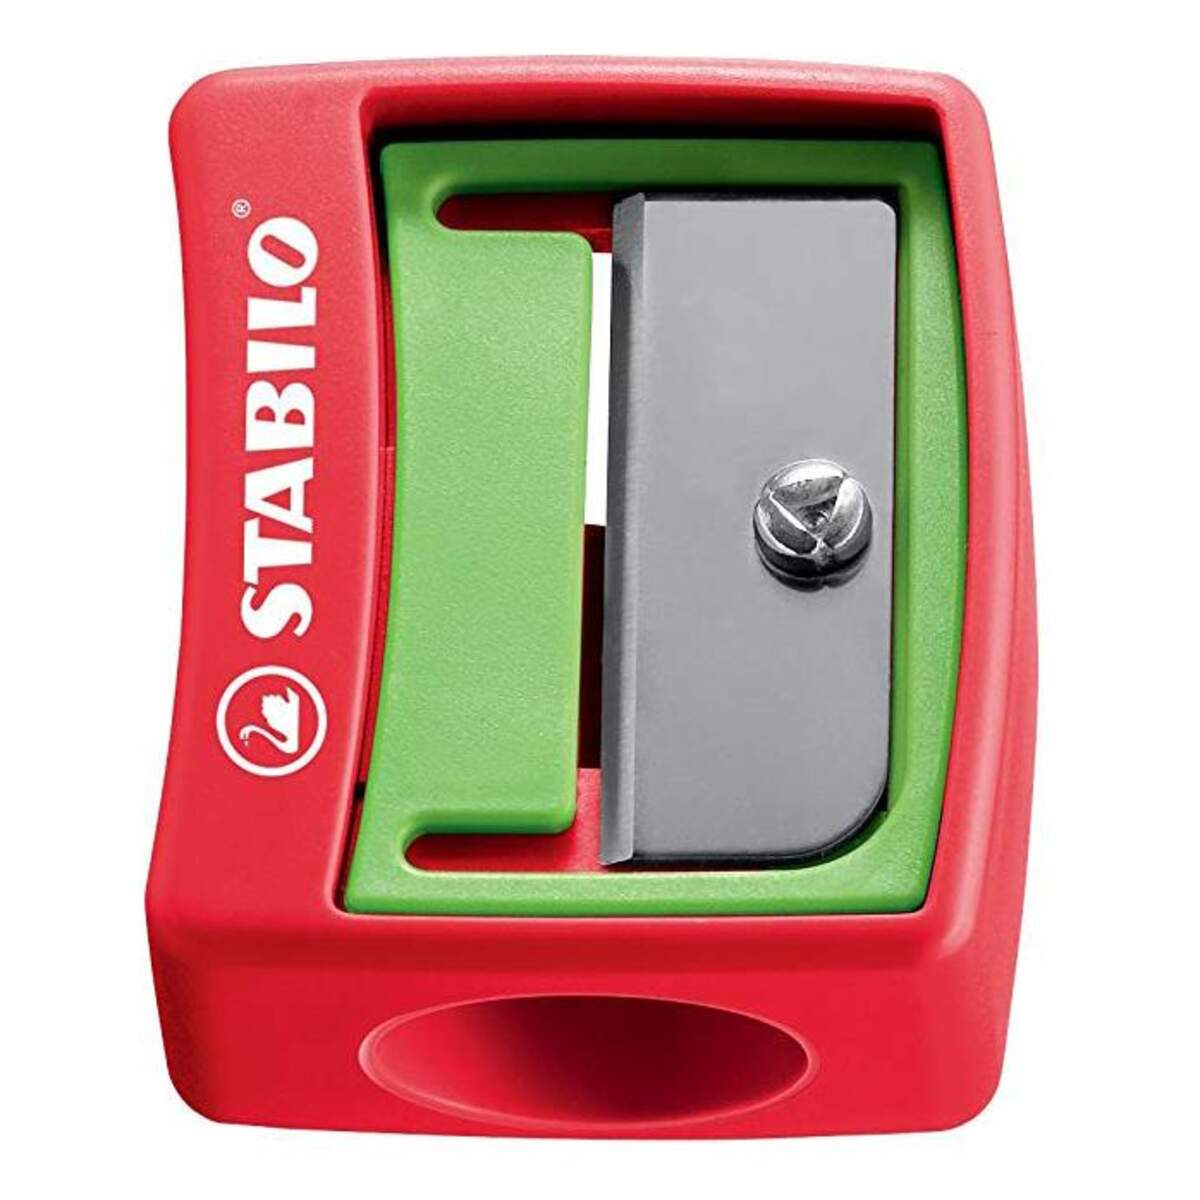 Spitzer - STABILO woody 3 in 1 Spitzer- für extradicke Stifte - 2er Pack - grün/rot, rot/grün